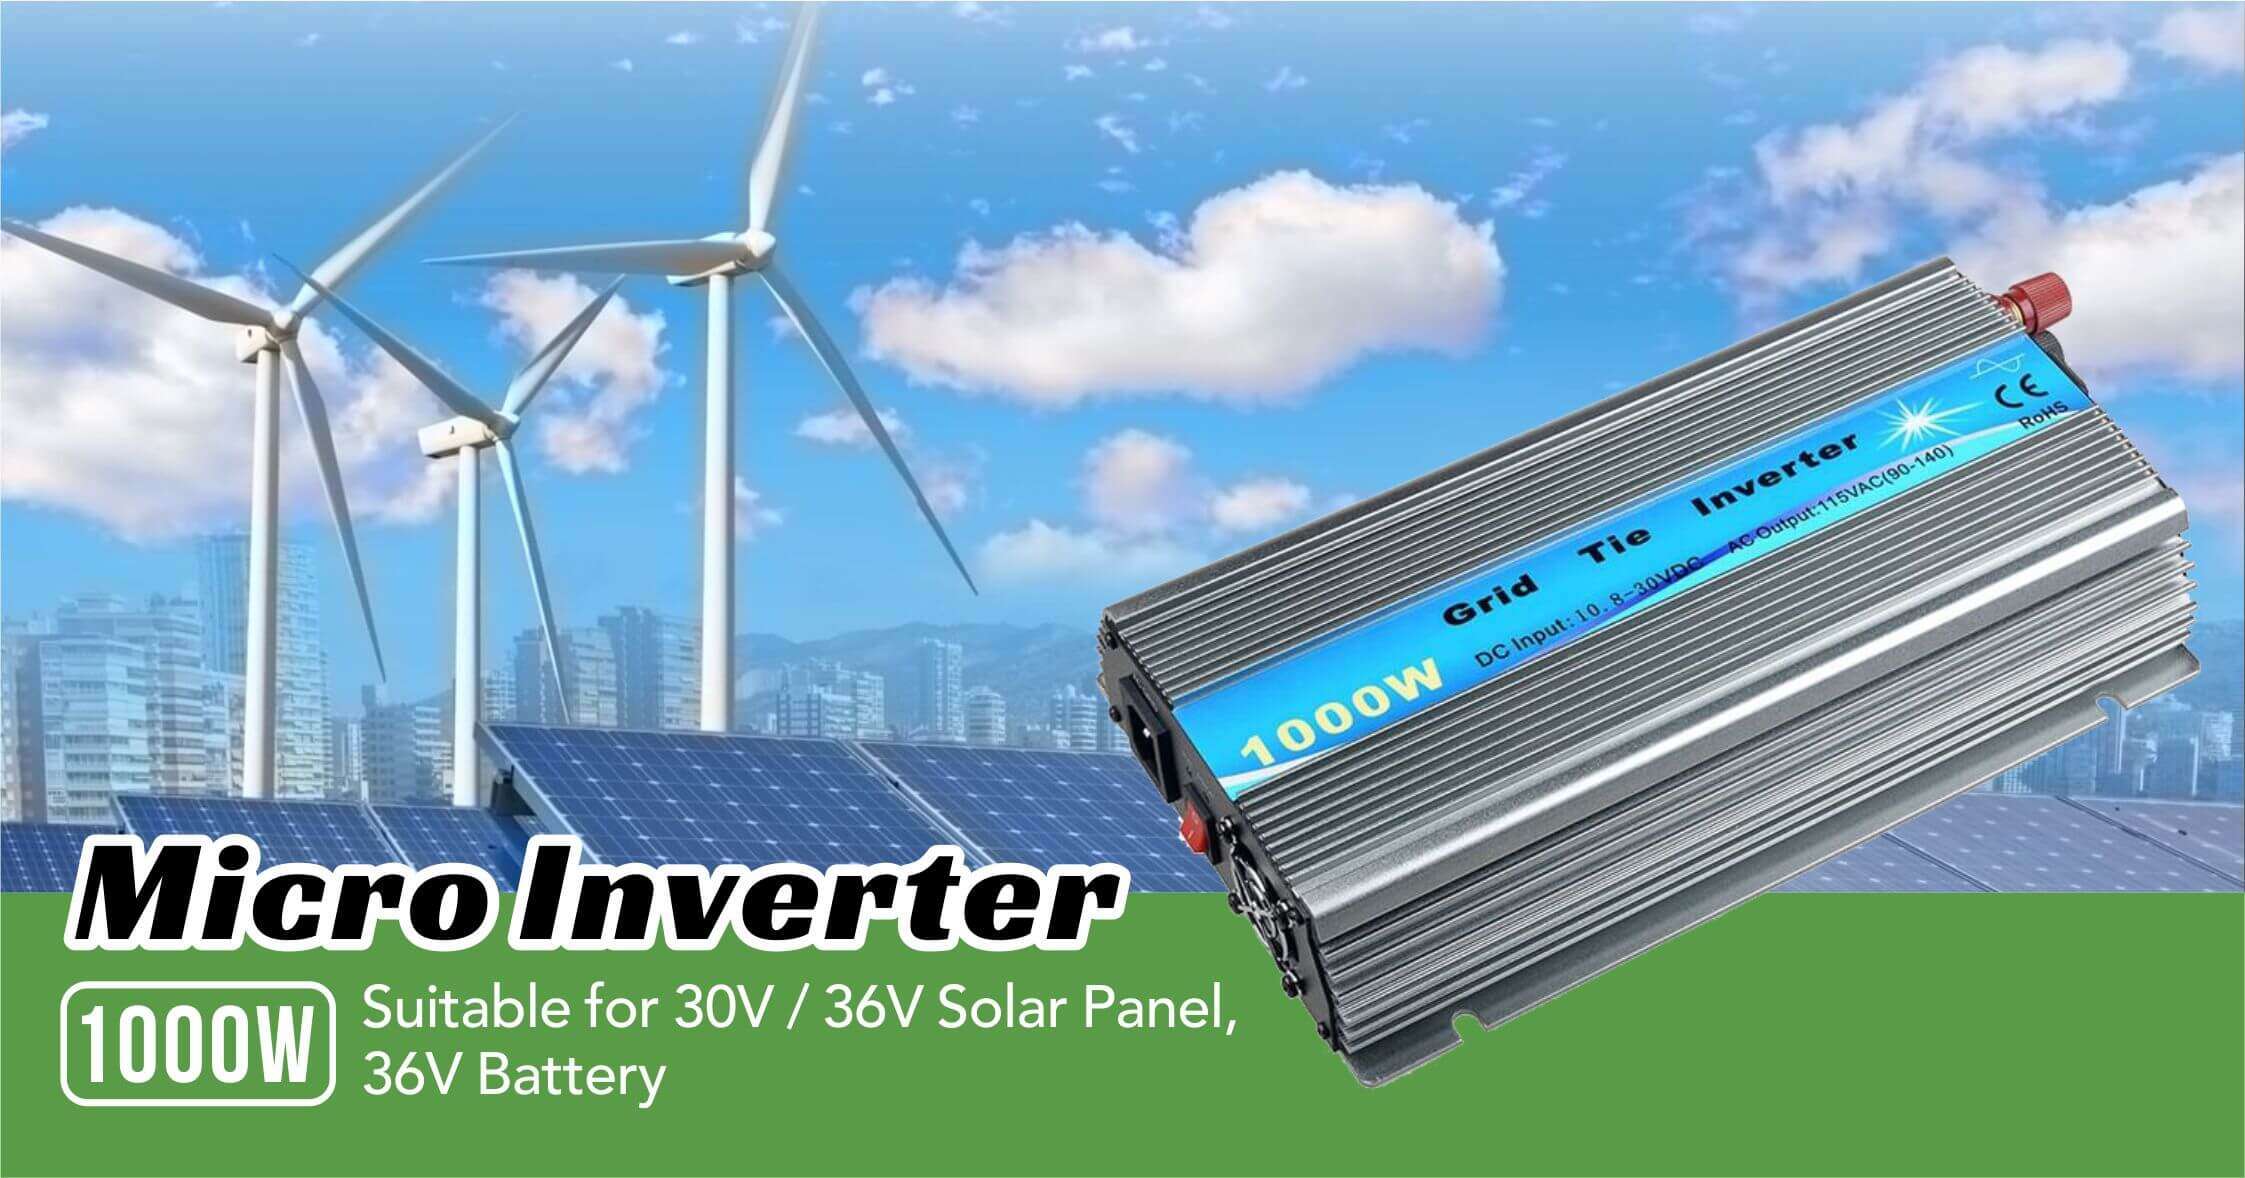 1000w solar micro inverter